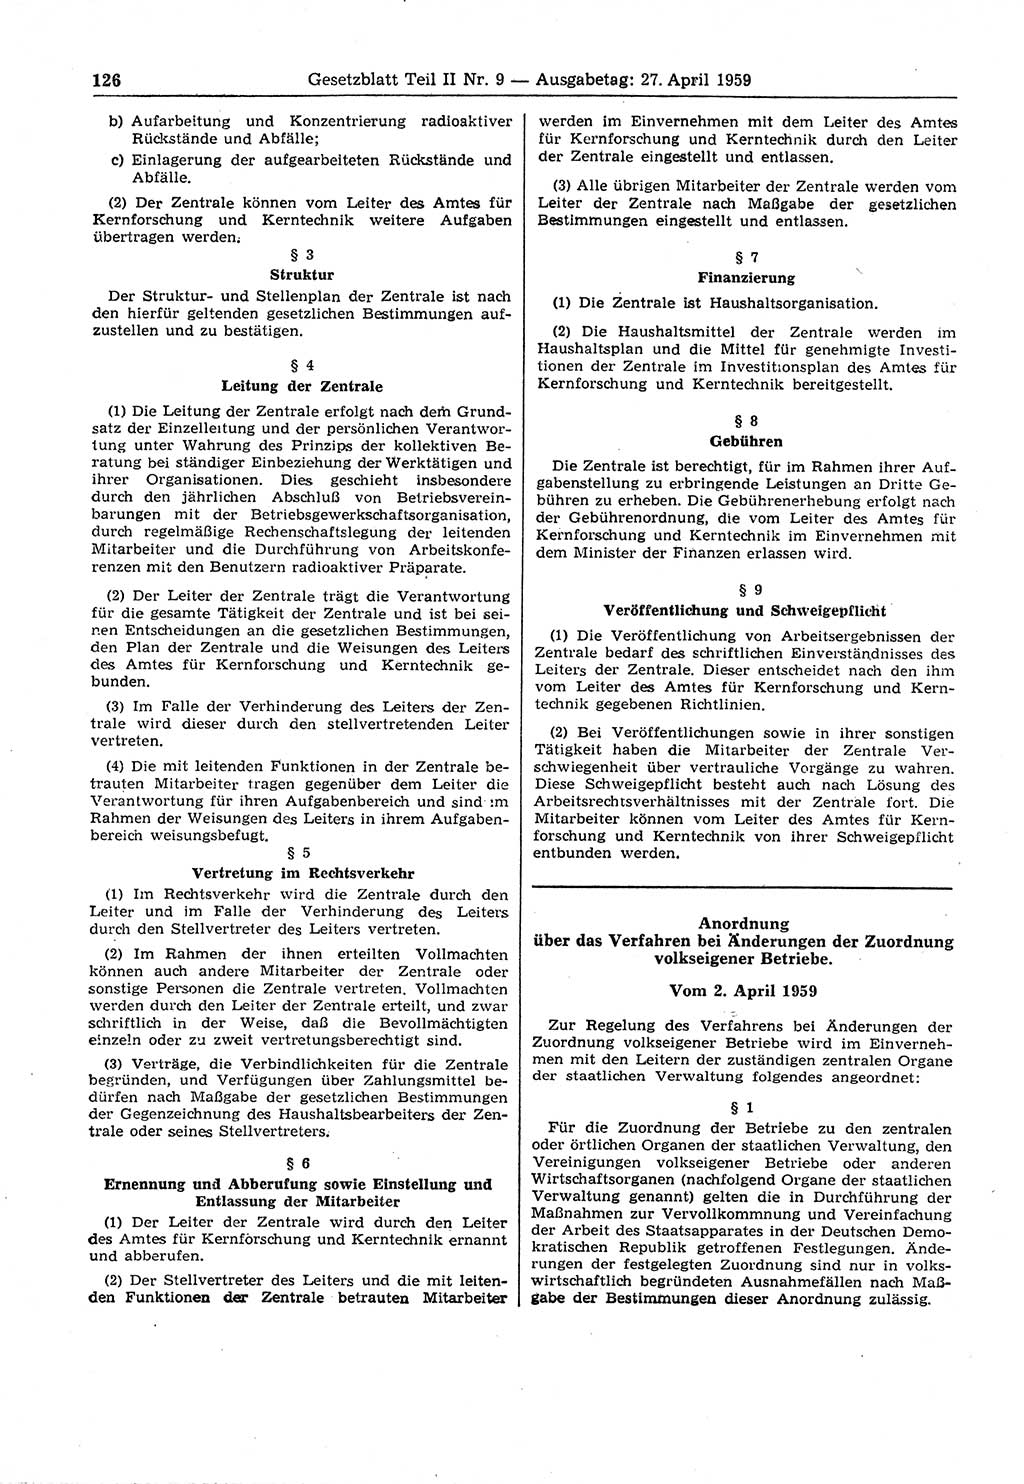 Gesetzblatt (GBl.) der Deutschen Demokratischen Republik (DDR) Teil ⅠⅠ 1959, Seite 126 (GBl. DDR ⅠⅠ 1959, S. 126)